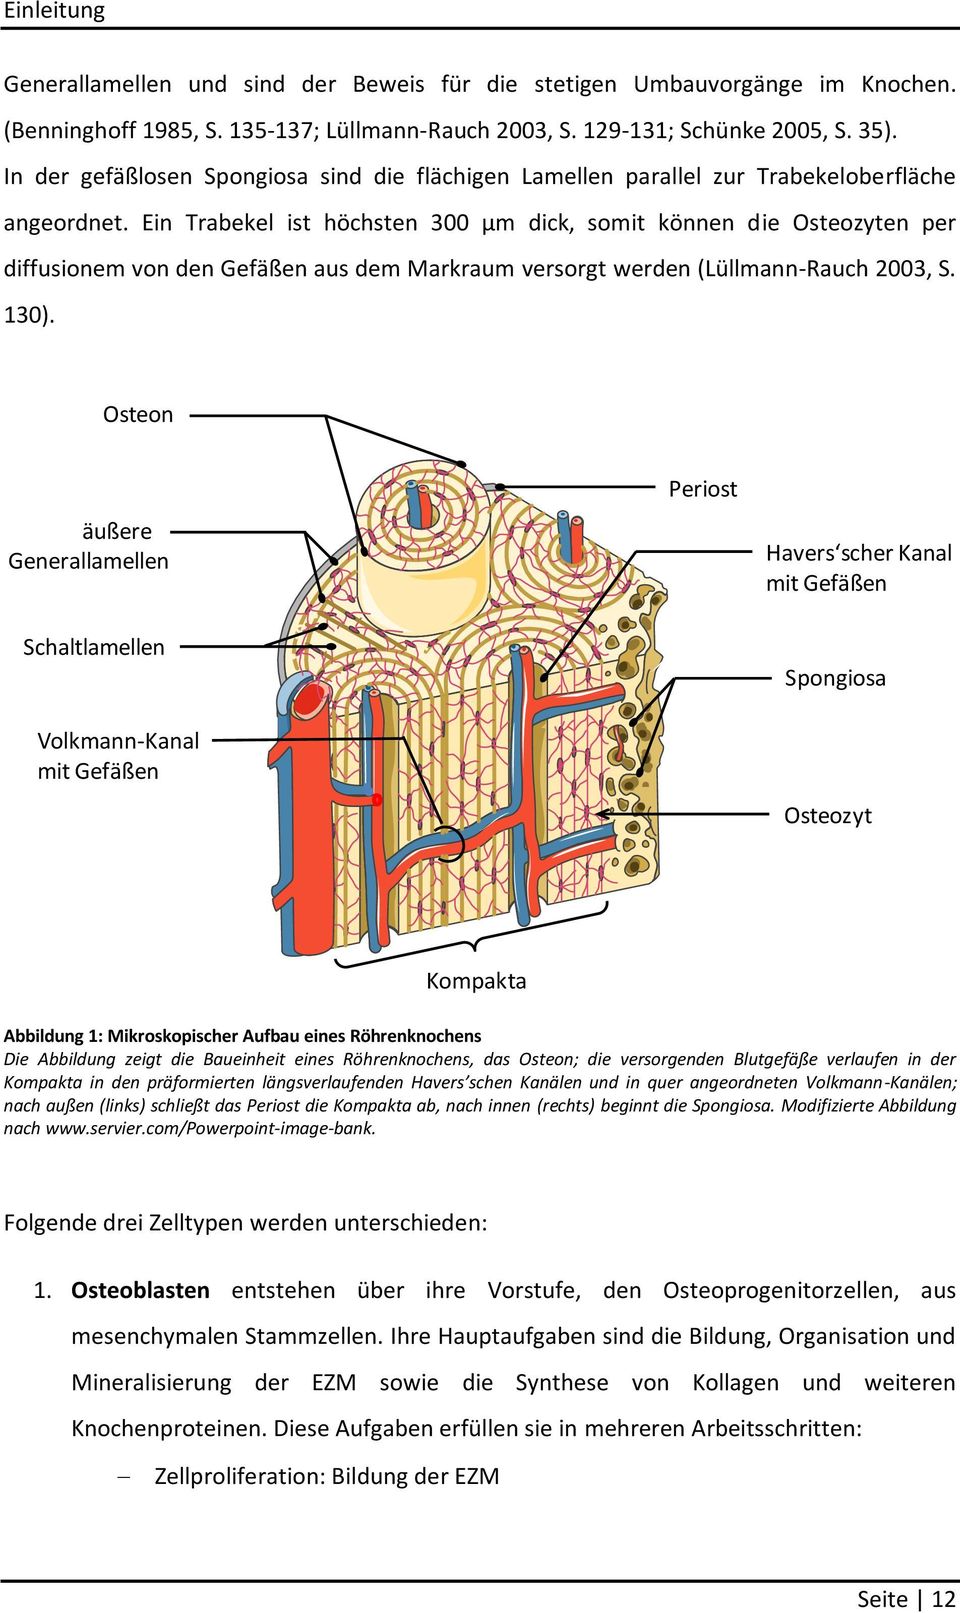 Ein Trabekel ist höchsten 300 µm dick, somit können die Osteozyten per diffusionem von den Gefäßen aus dem Markraum versorgt werden (Lüllmann-Rauch 2003, S. 130).